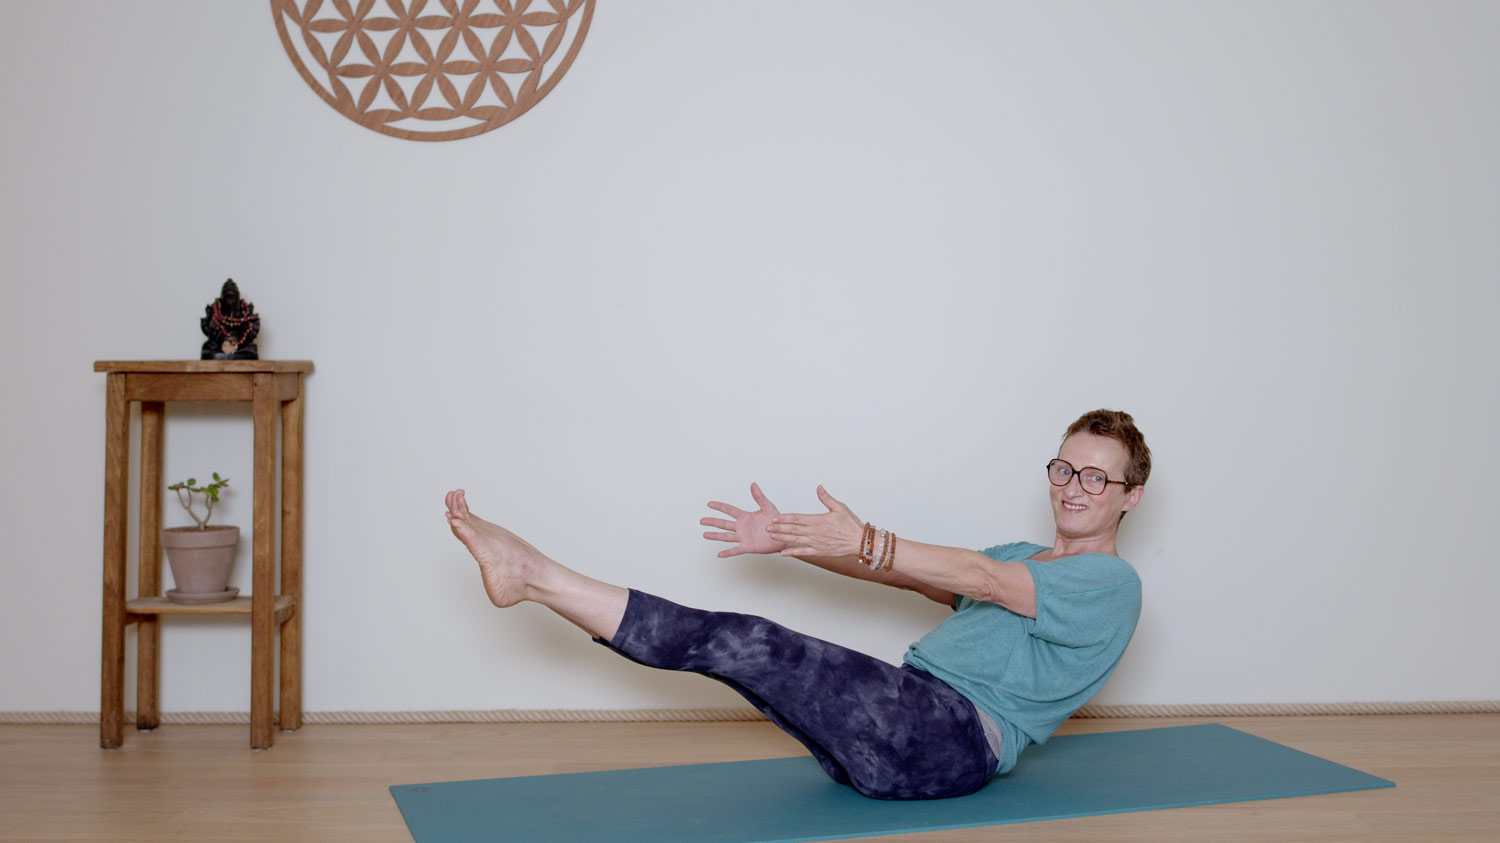 Replay du jeudi 14 septembre | Cours de yoga en ligne avec Delphine Denis | Hatha Yoga dynamique, Méditation, Pranayama